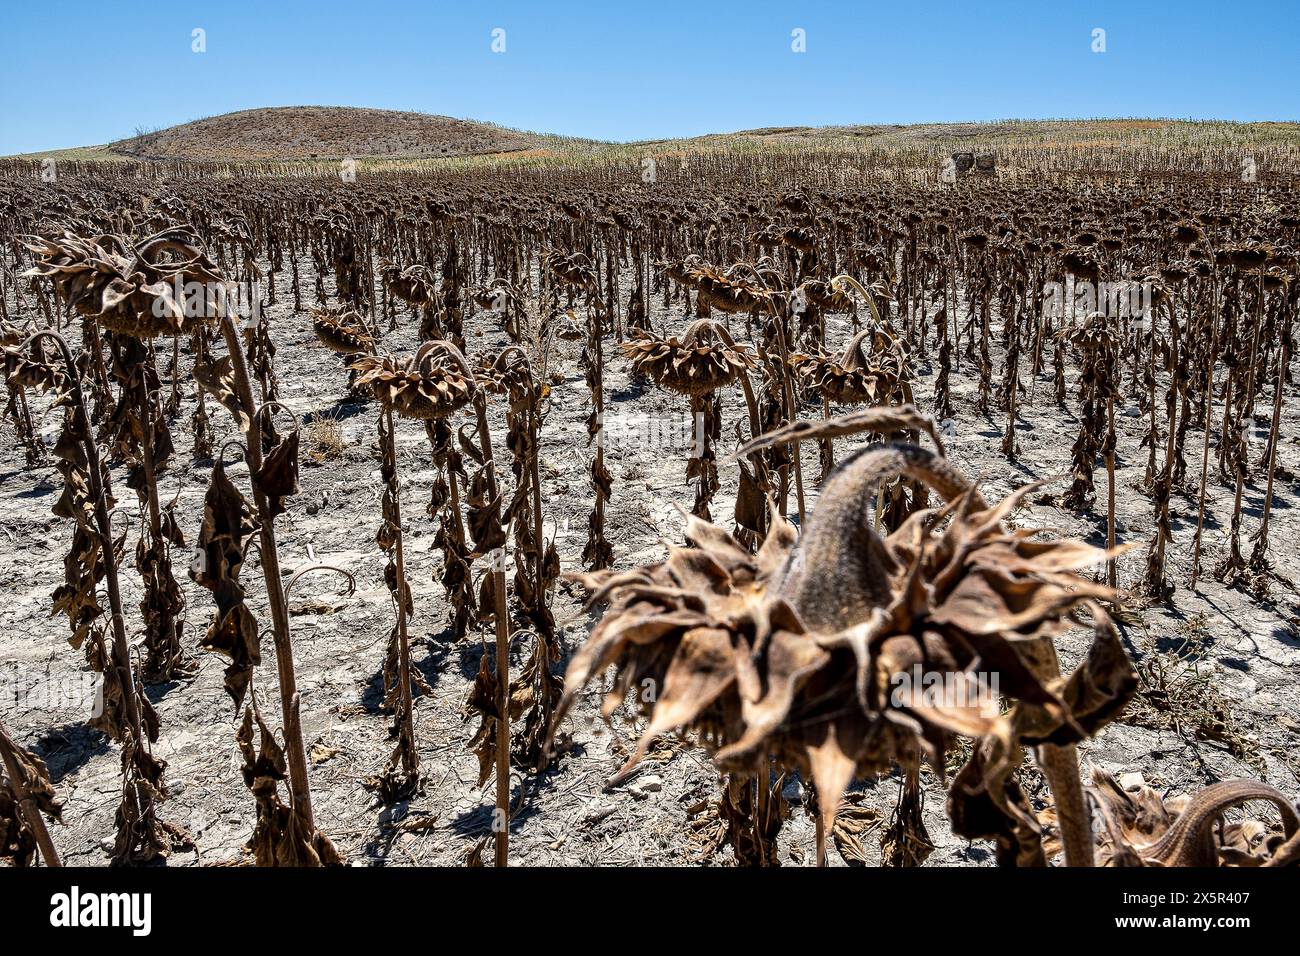 Piantagione secca di girasoli dovuta alla siccità, Utrera, Andalusia, Spagna Foto Stock